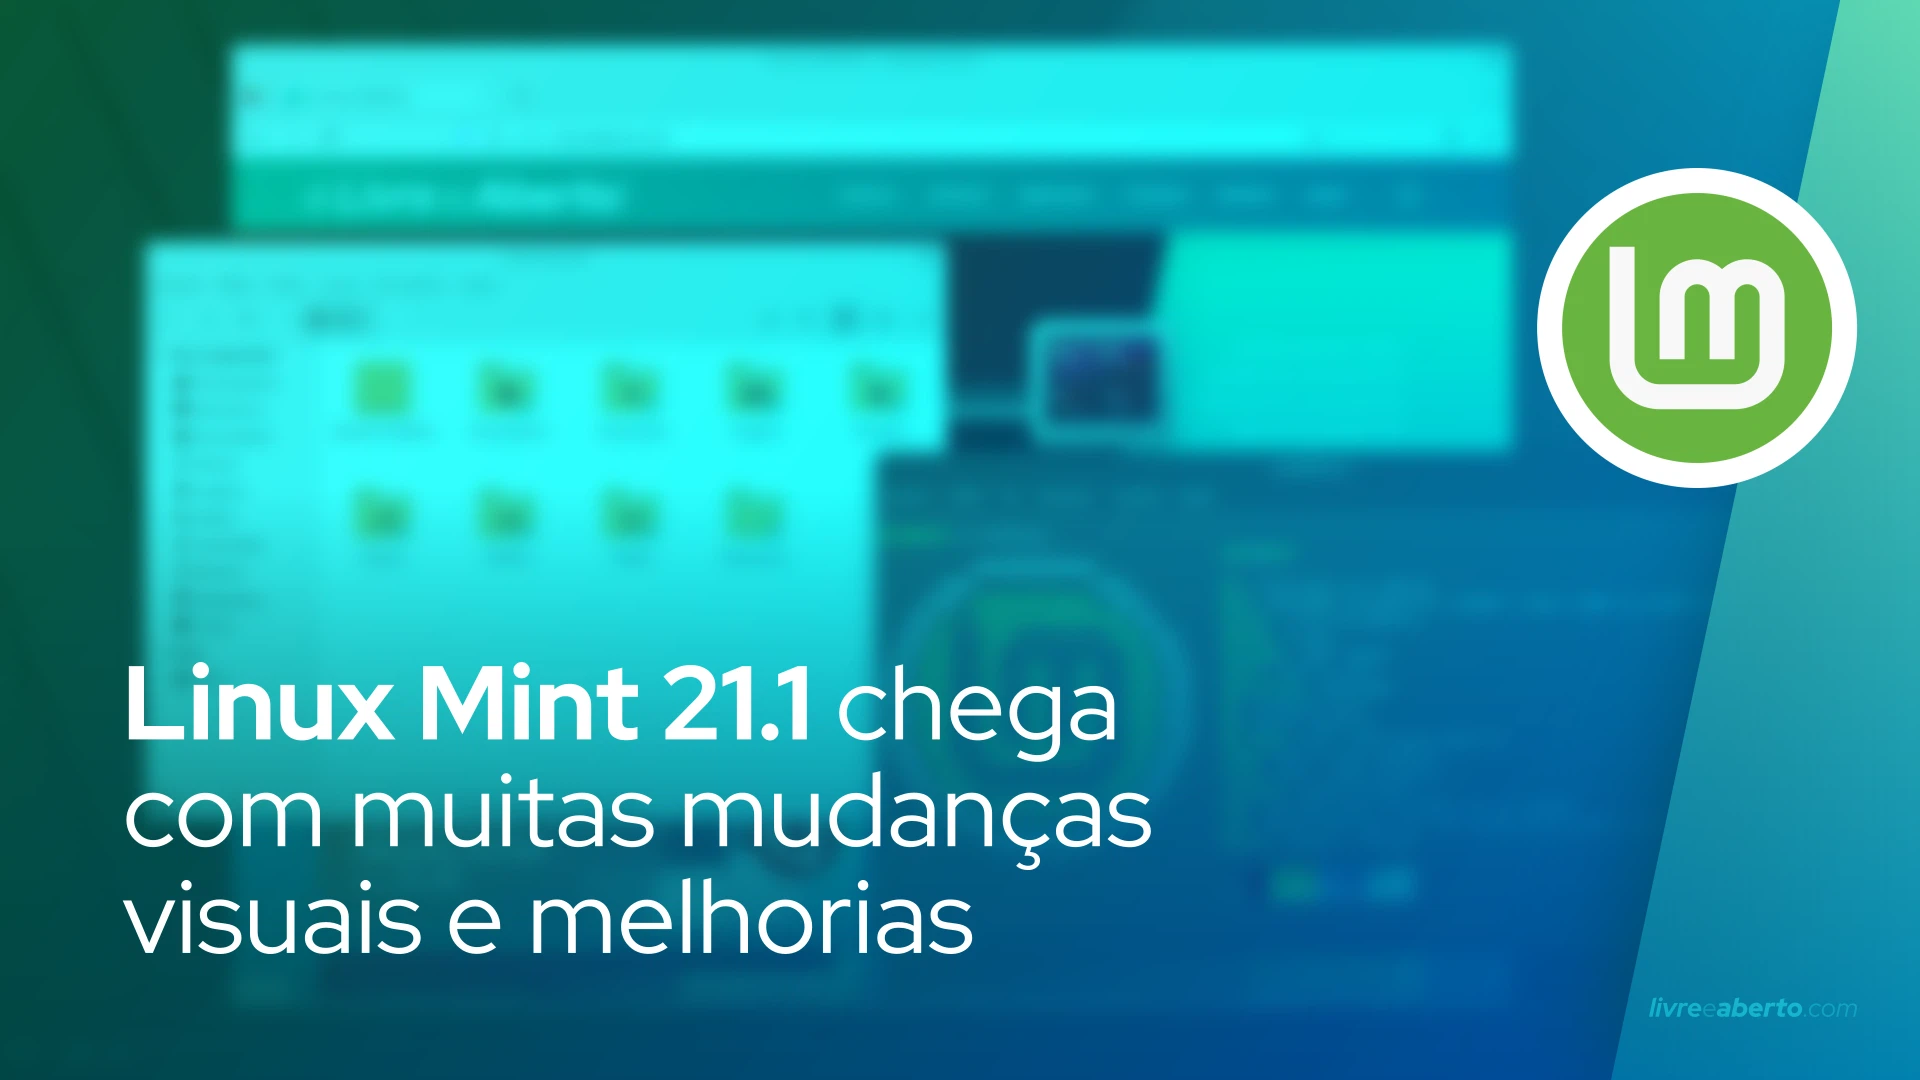 Linux Mint 21.1 chega com muitas mudanças visuais e melhorias